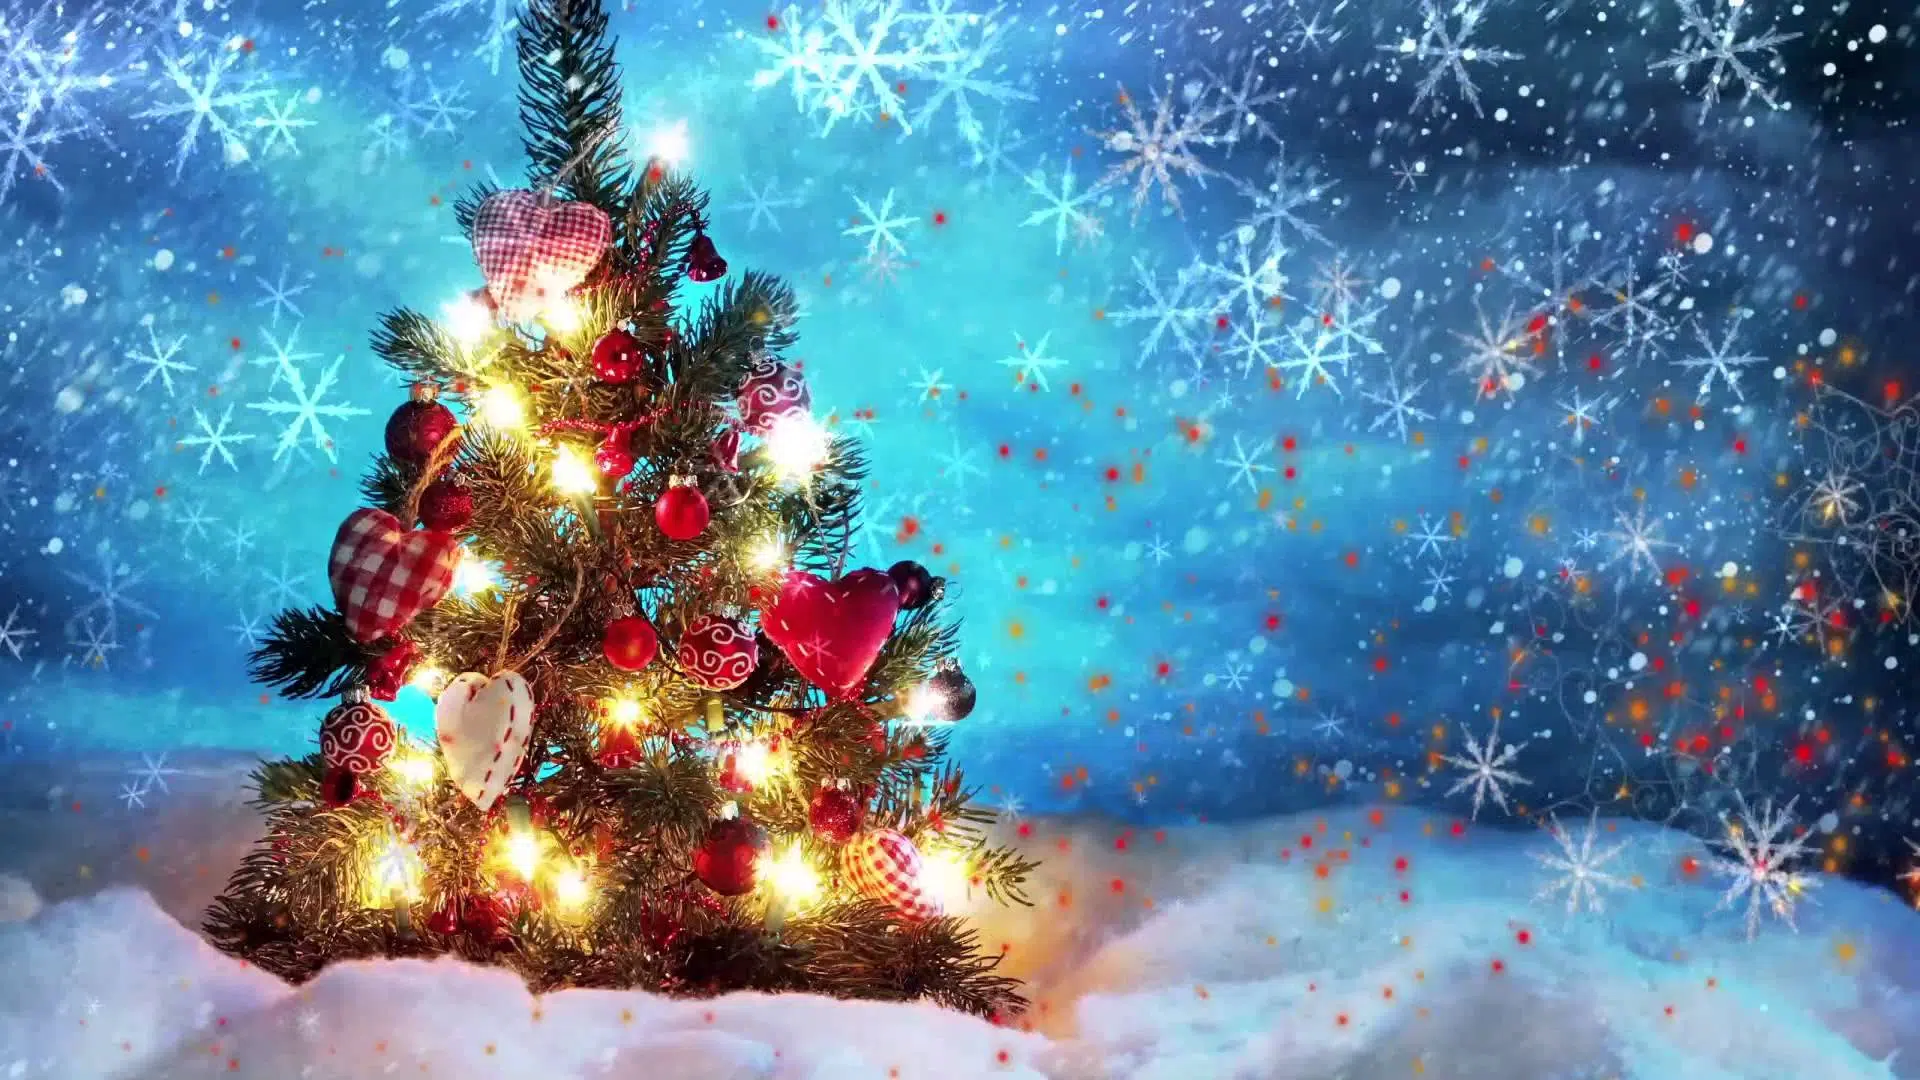 Hình nền Giáng sinh xanh animeted sẽ mang đến cho bạn cảm giác mát mẻ, tươi mới và thật đầy sinh động. Những hình ảnh về cây thông Noel, quả bóng, vòng hoa và những con tuần lộc đón Giáng sinh sẽ khiến bạn phấn khích và tận hưởng mùa lễ hội này. Hãy tải về ngay để trải nghiệm!